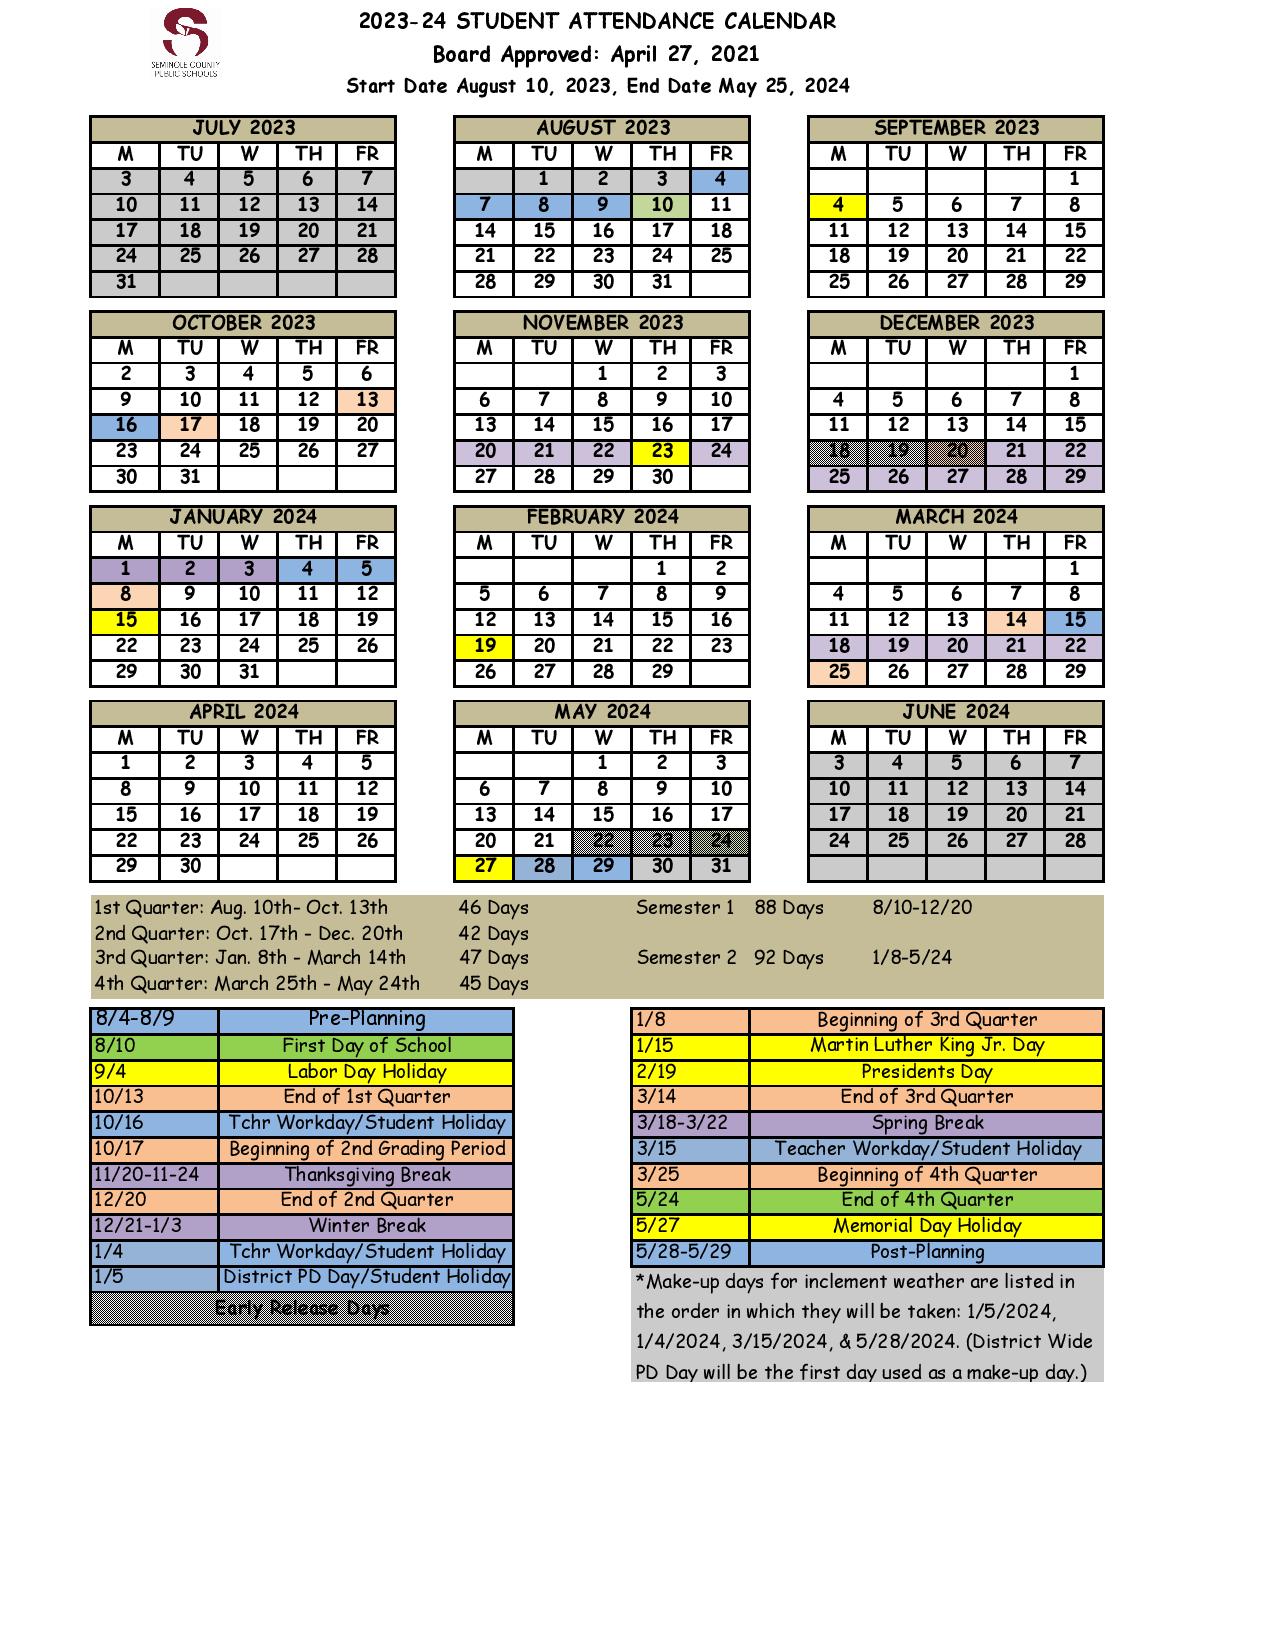 Seminole County Public Schools Calendar 2023-2024